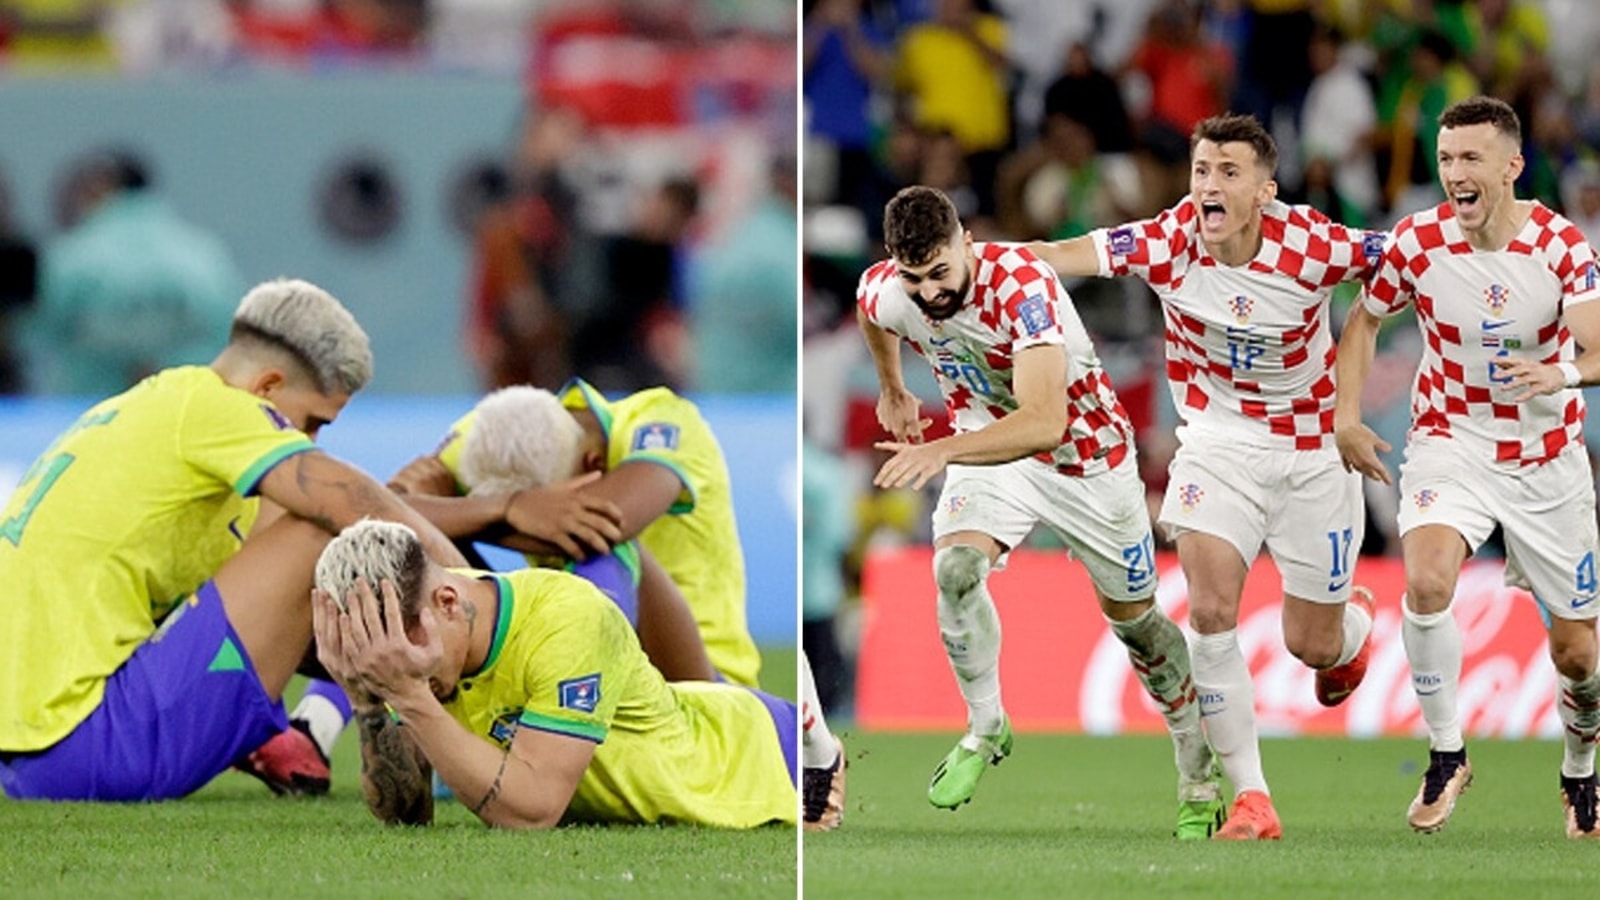 Heartbreak for Brazil as Croatia win on penalties to reach World Cup